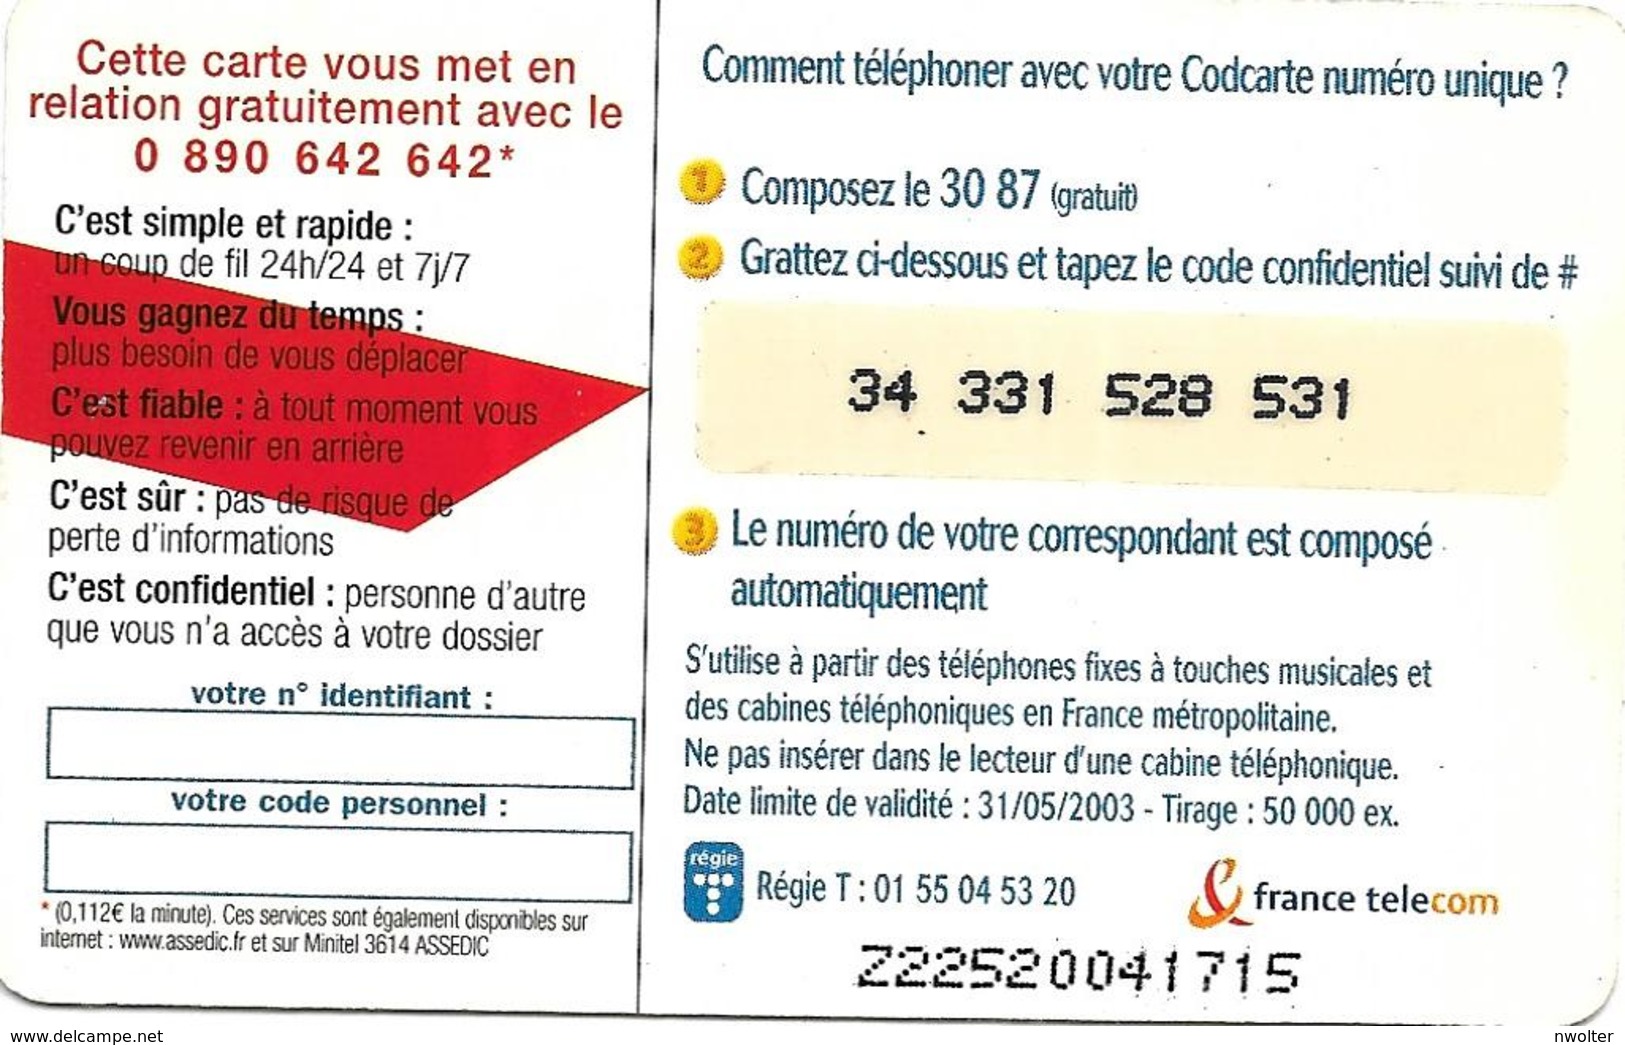 @+ Codcarte France Télécom - Unidialog Paris - 10min - Z22520041715 - FT Tickets